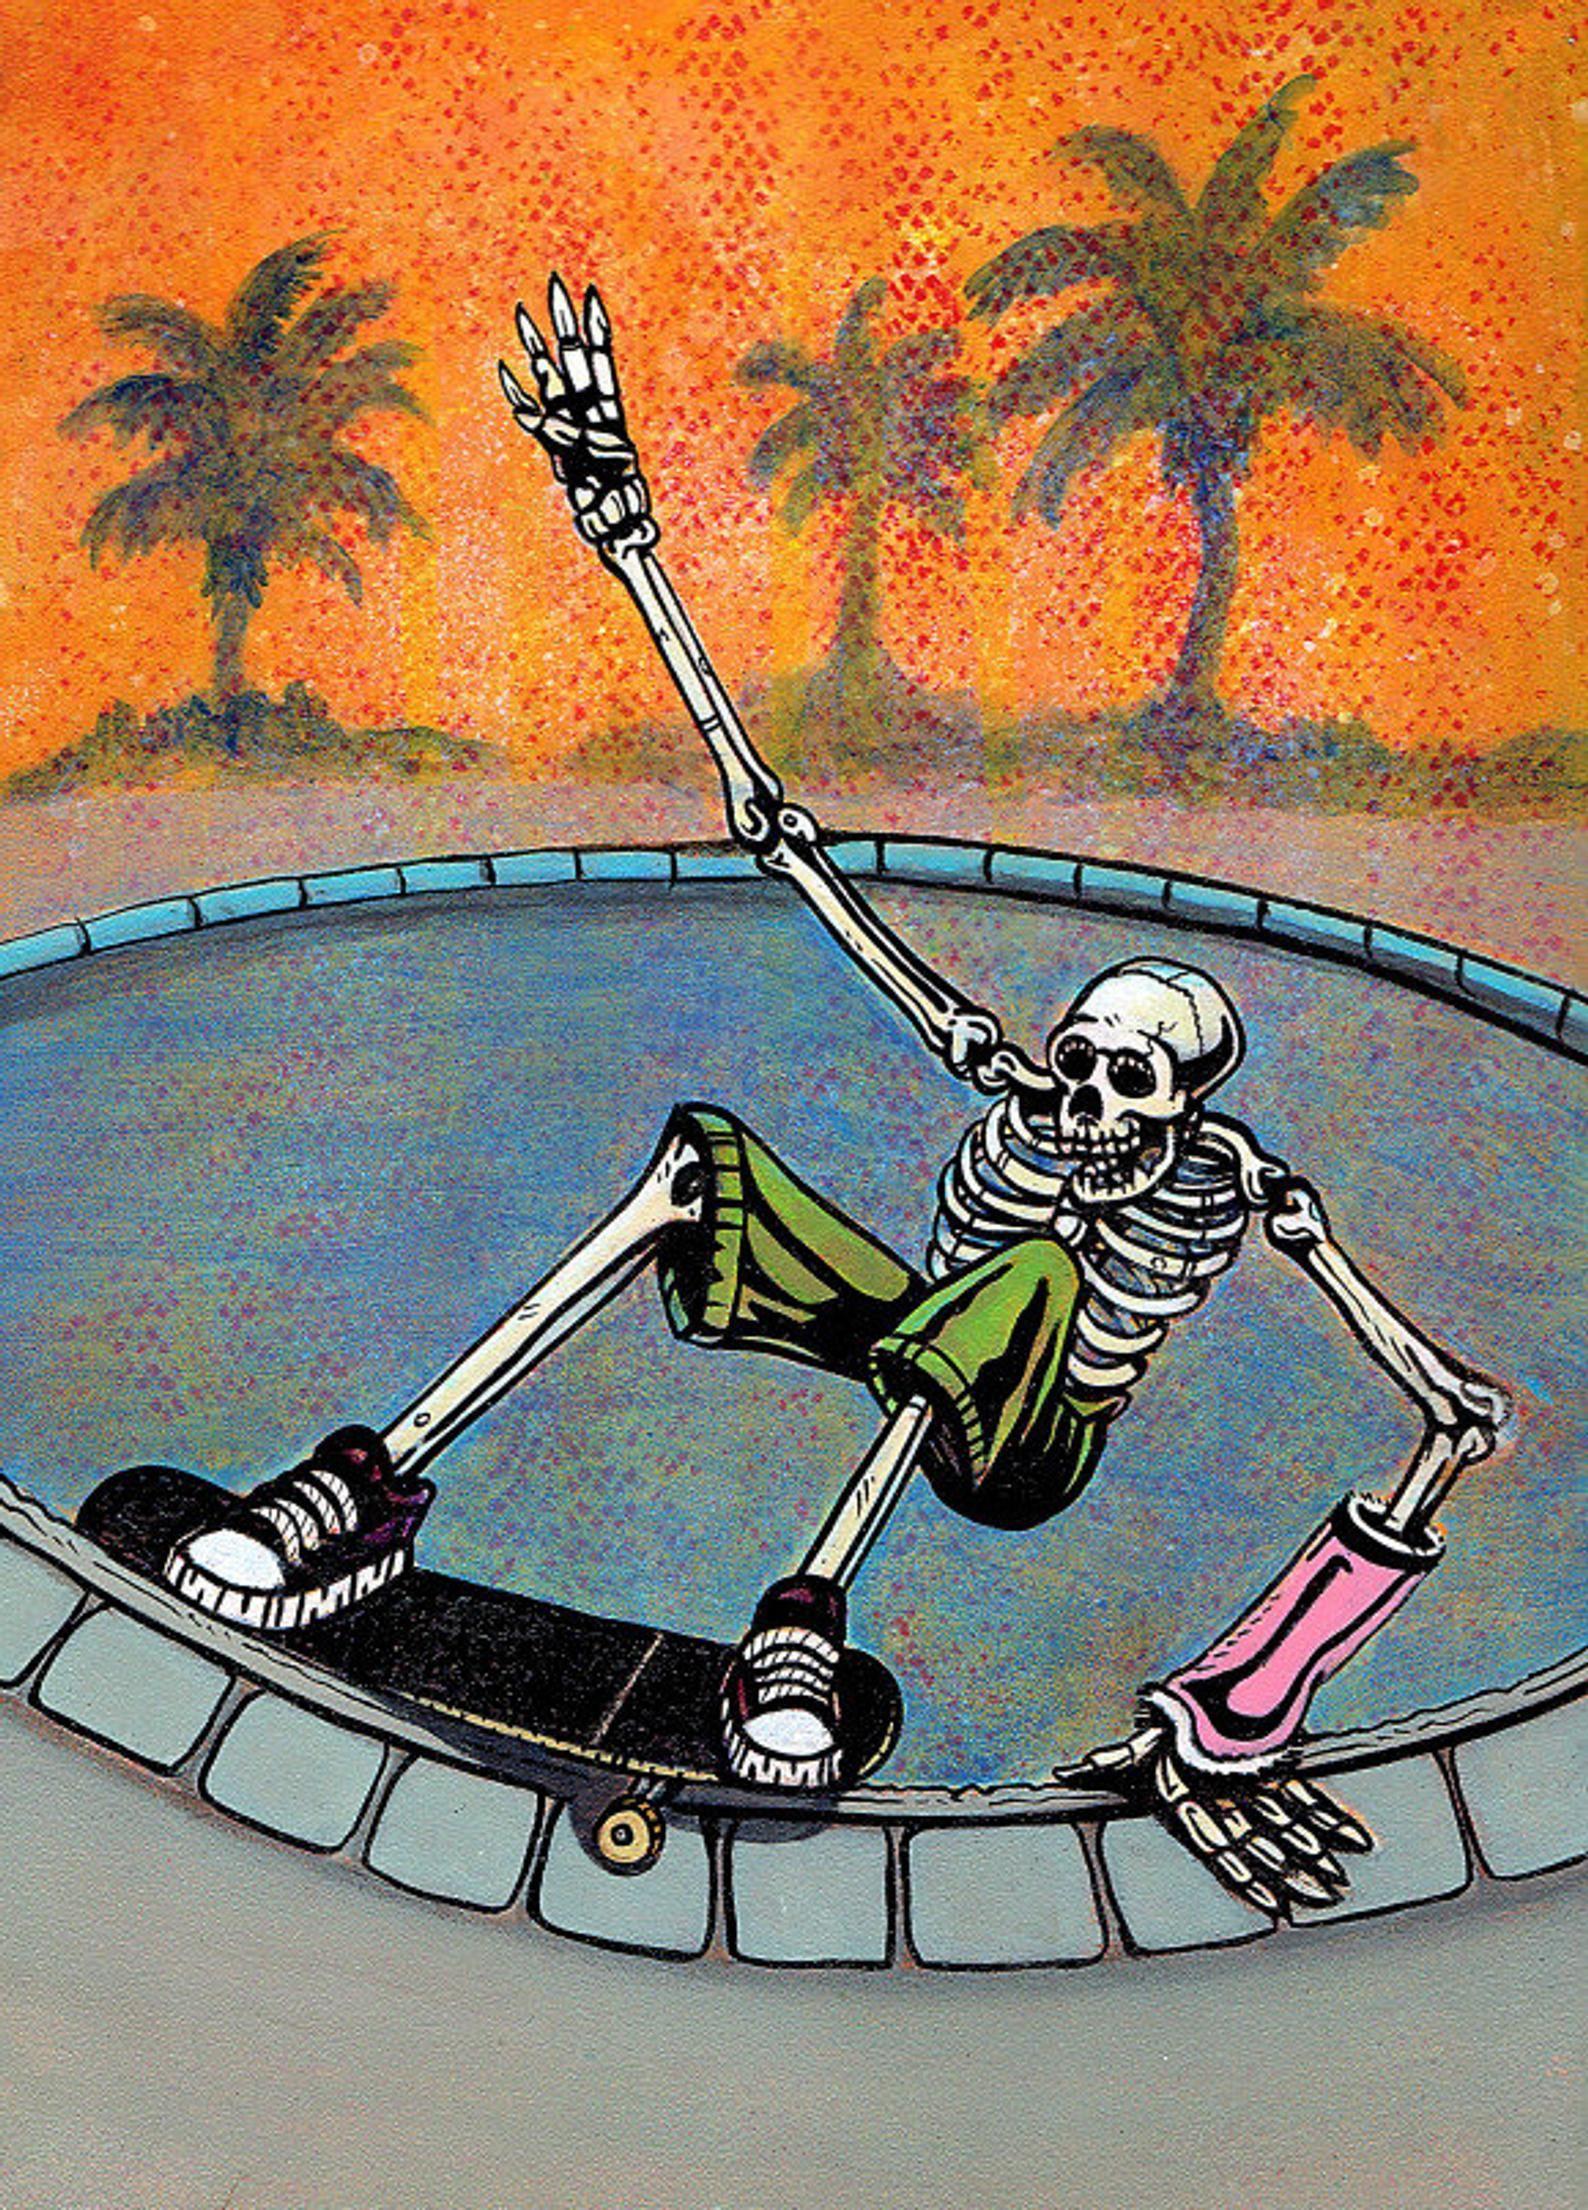 1588 x 2210 · jpeg - SKATE ART PRINT, Skeleton Skateboard, Birthday Gift, Day of Dead ...